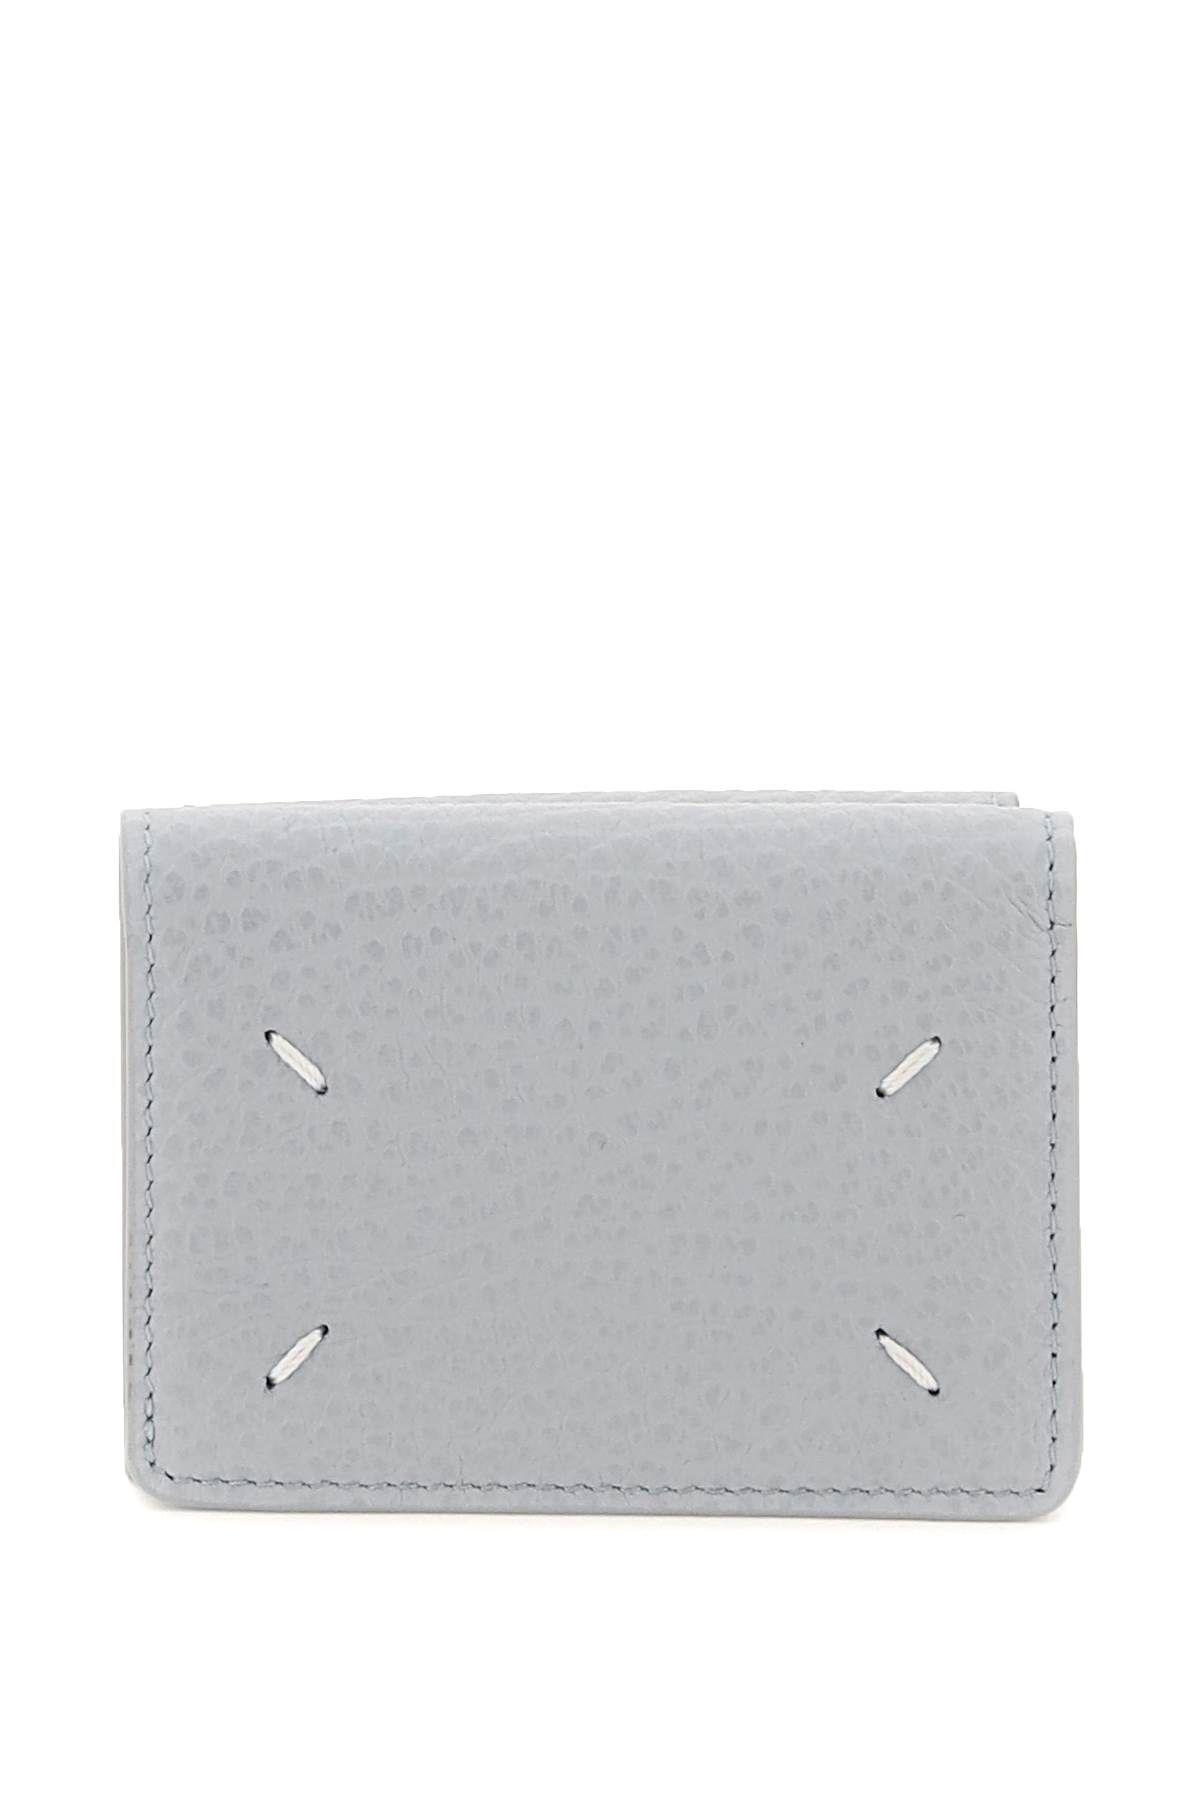 Maison Margiela Leather Tri-fold Wallet In Light Blue